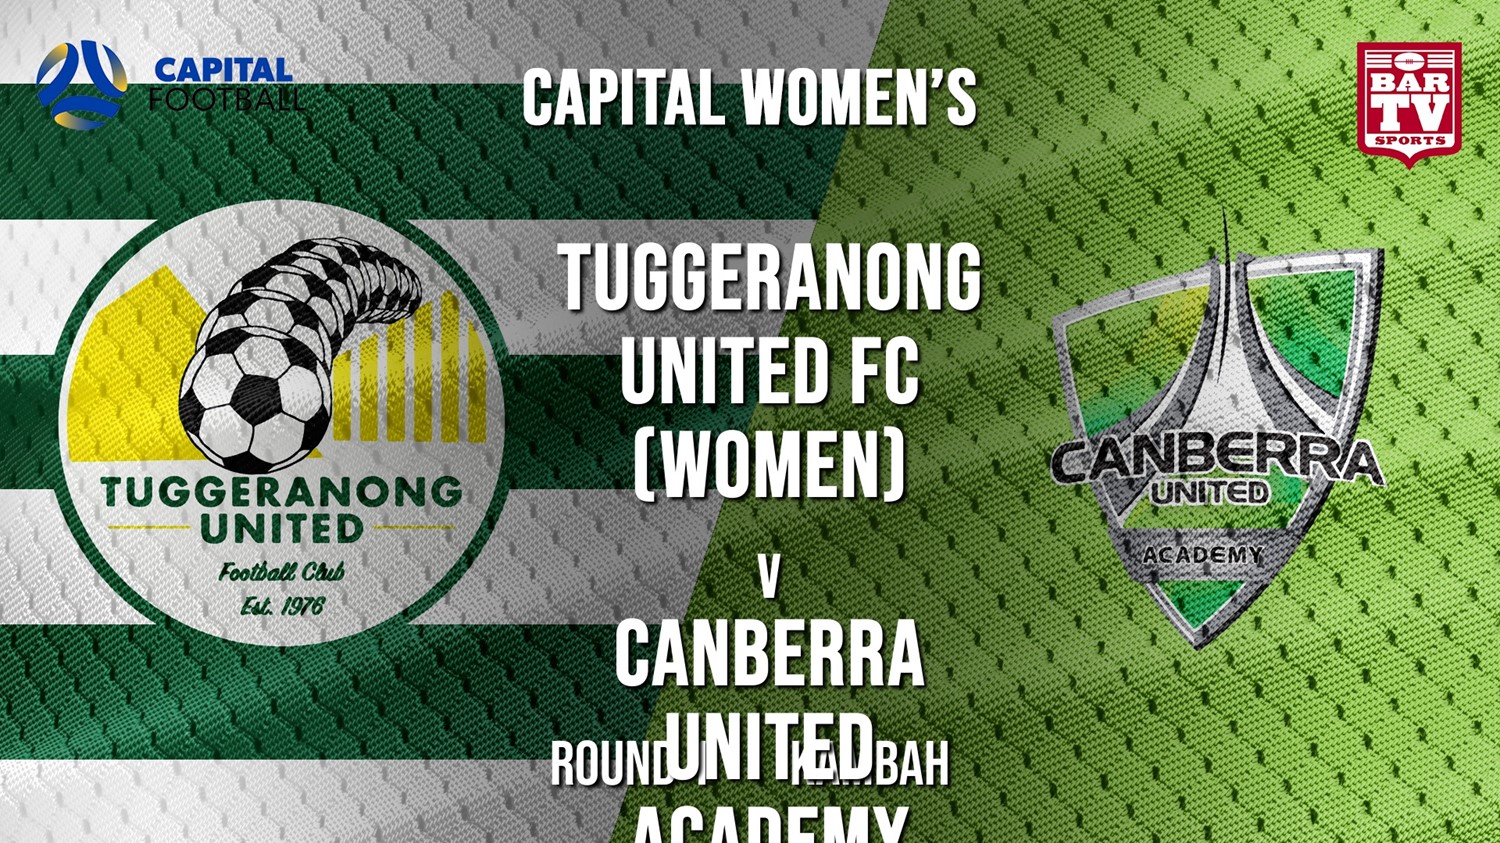 NPL Women - Capital Round 1 - Tuggeranong United FC (women) v Canberra United Academy (1) Minigame Slate Image